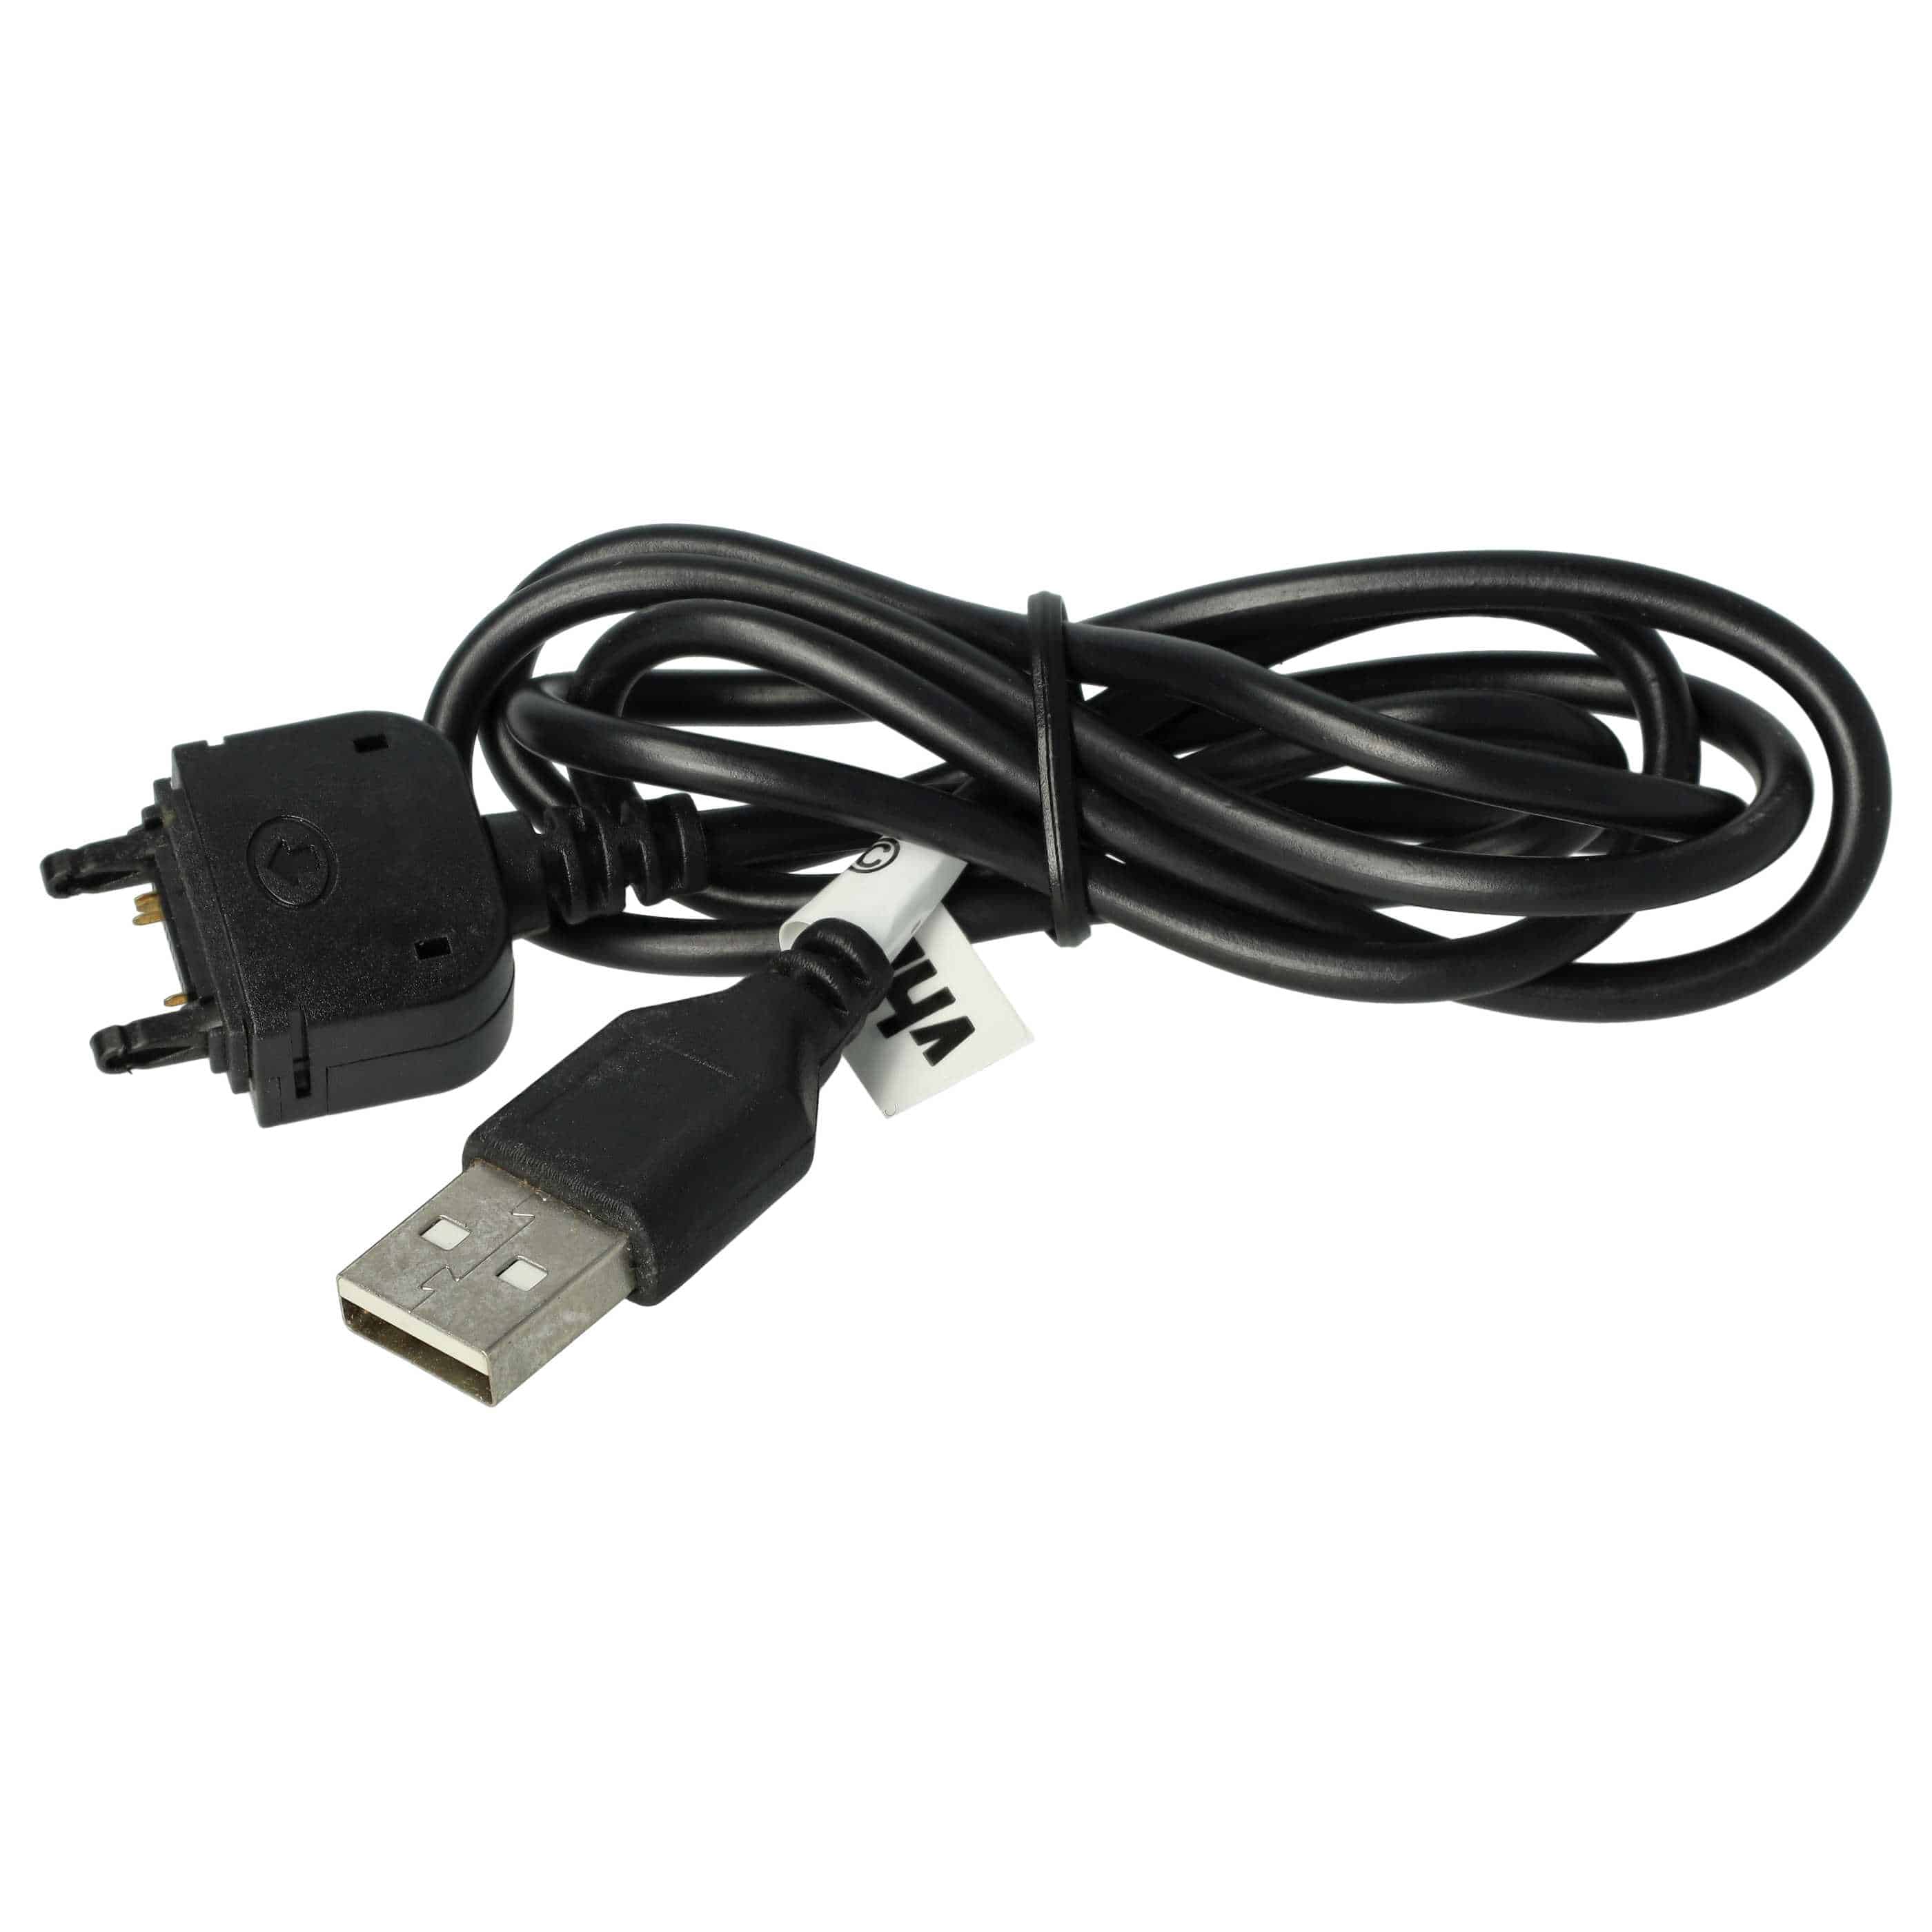 Kabel USB do transmisji danych zamiennik Sony DCU-60 do komórki Sony Ericsson